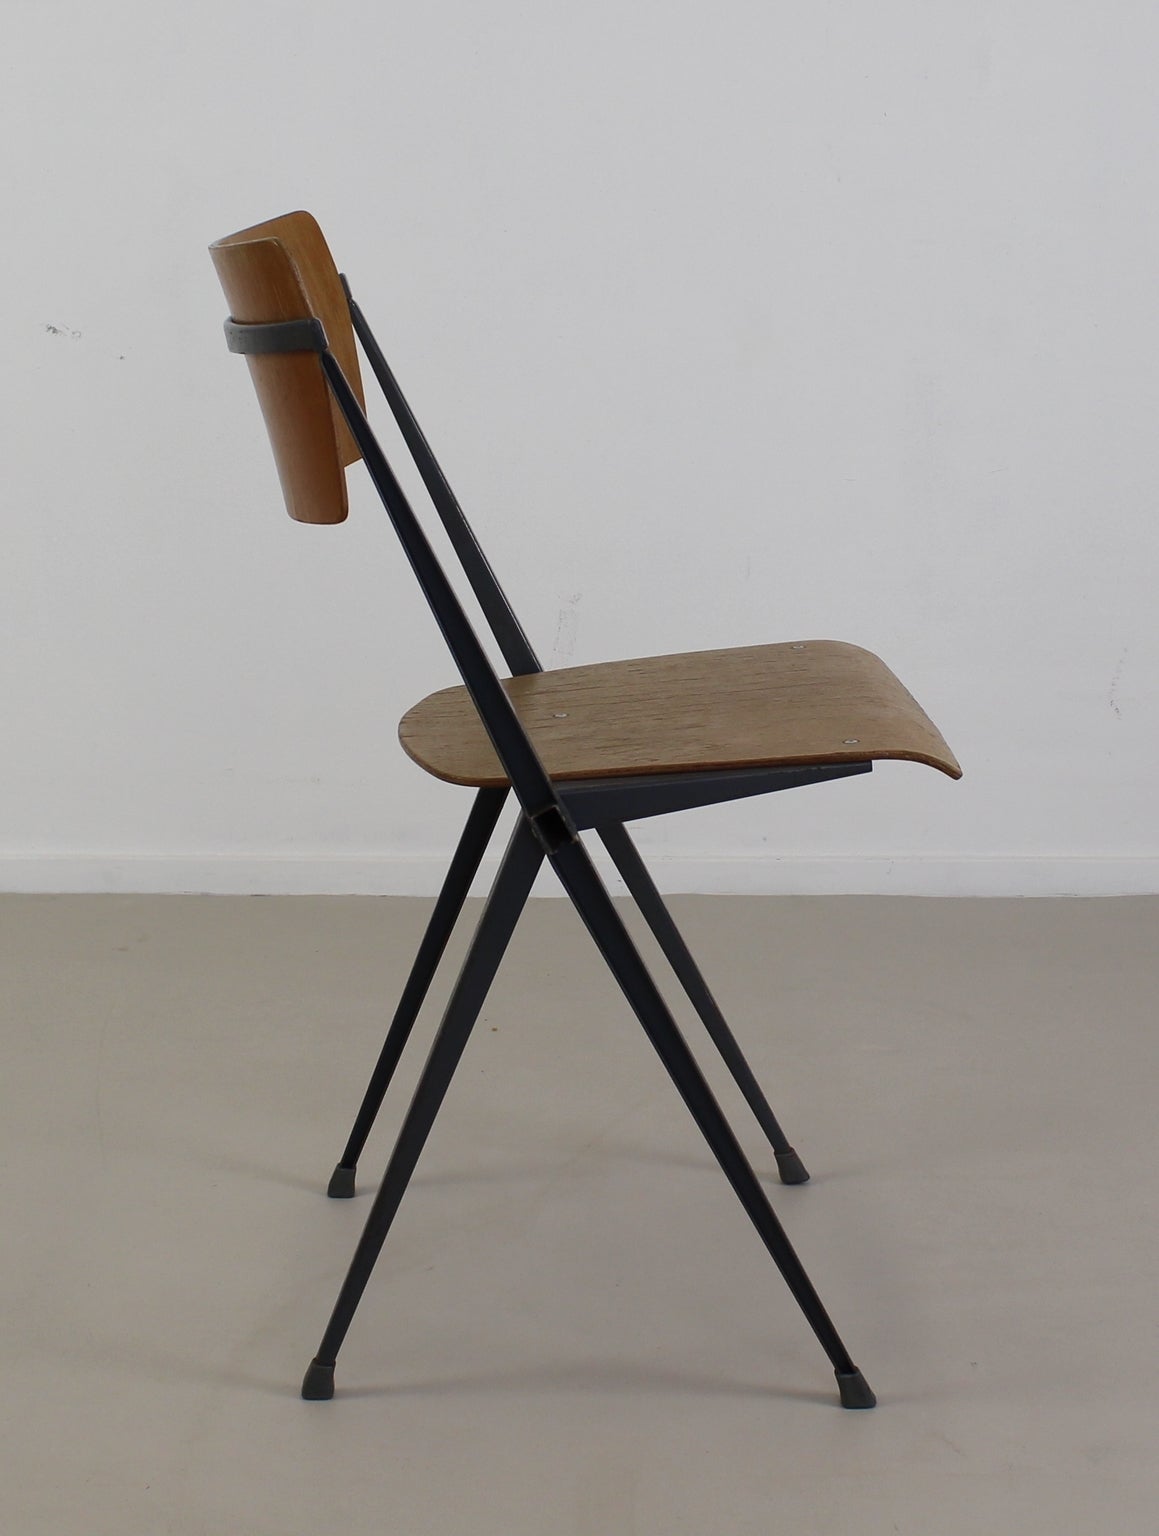 Industrial Dutch design.
Designer: Wim Rietveld.
Manufacturer: De Cirkel/Ahrend Holland.
Metal framewith wooden back and seating.

Standard parcel shipment advised